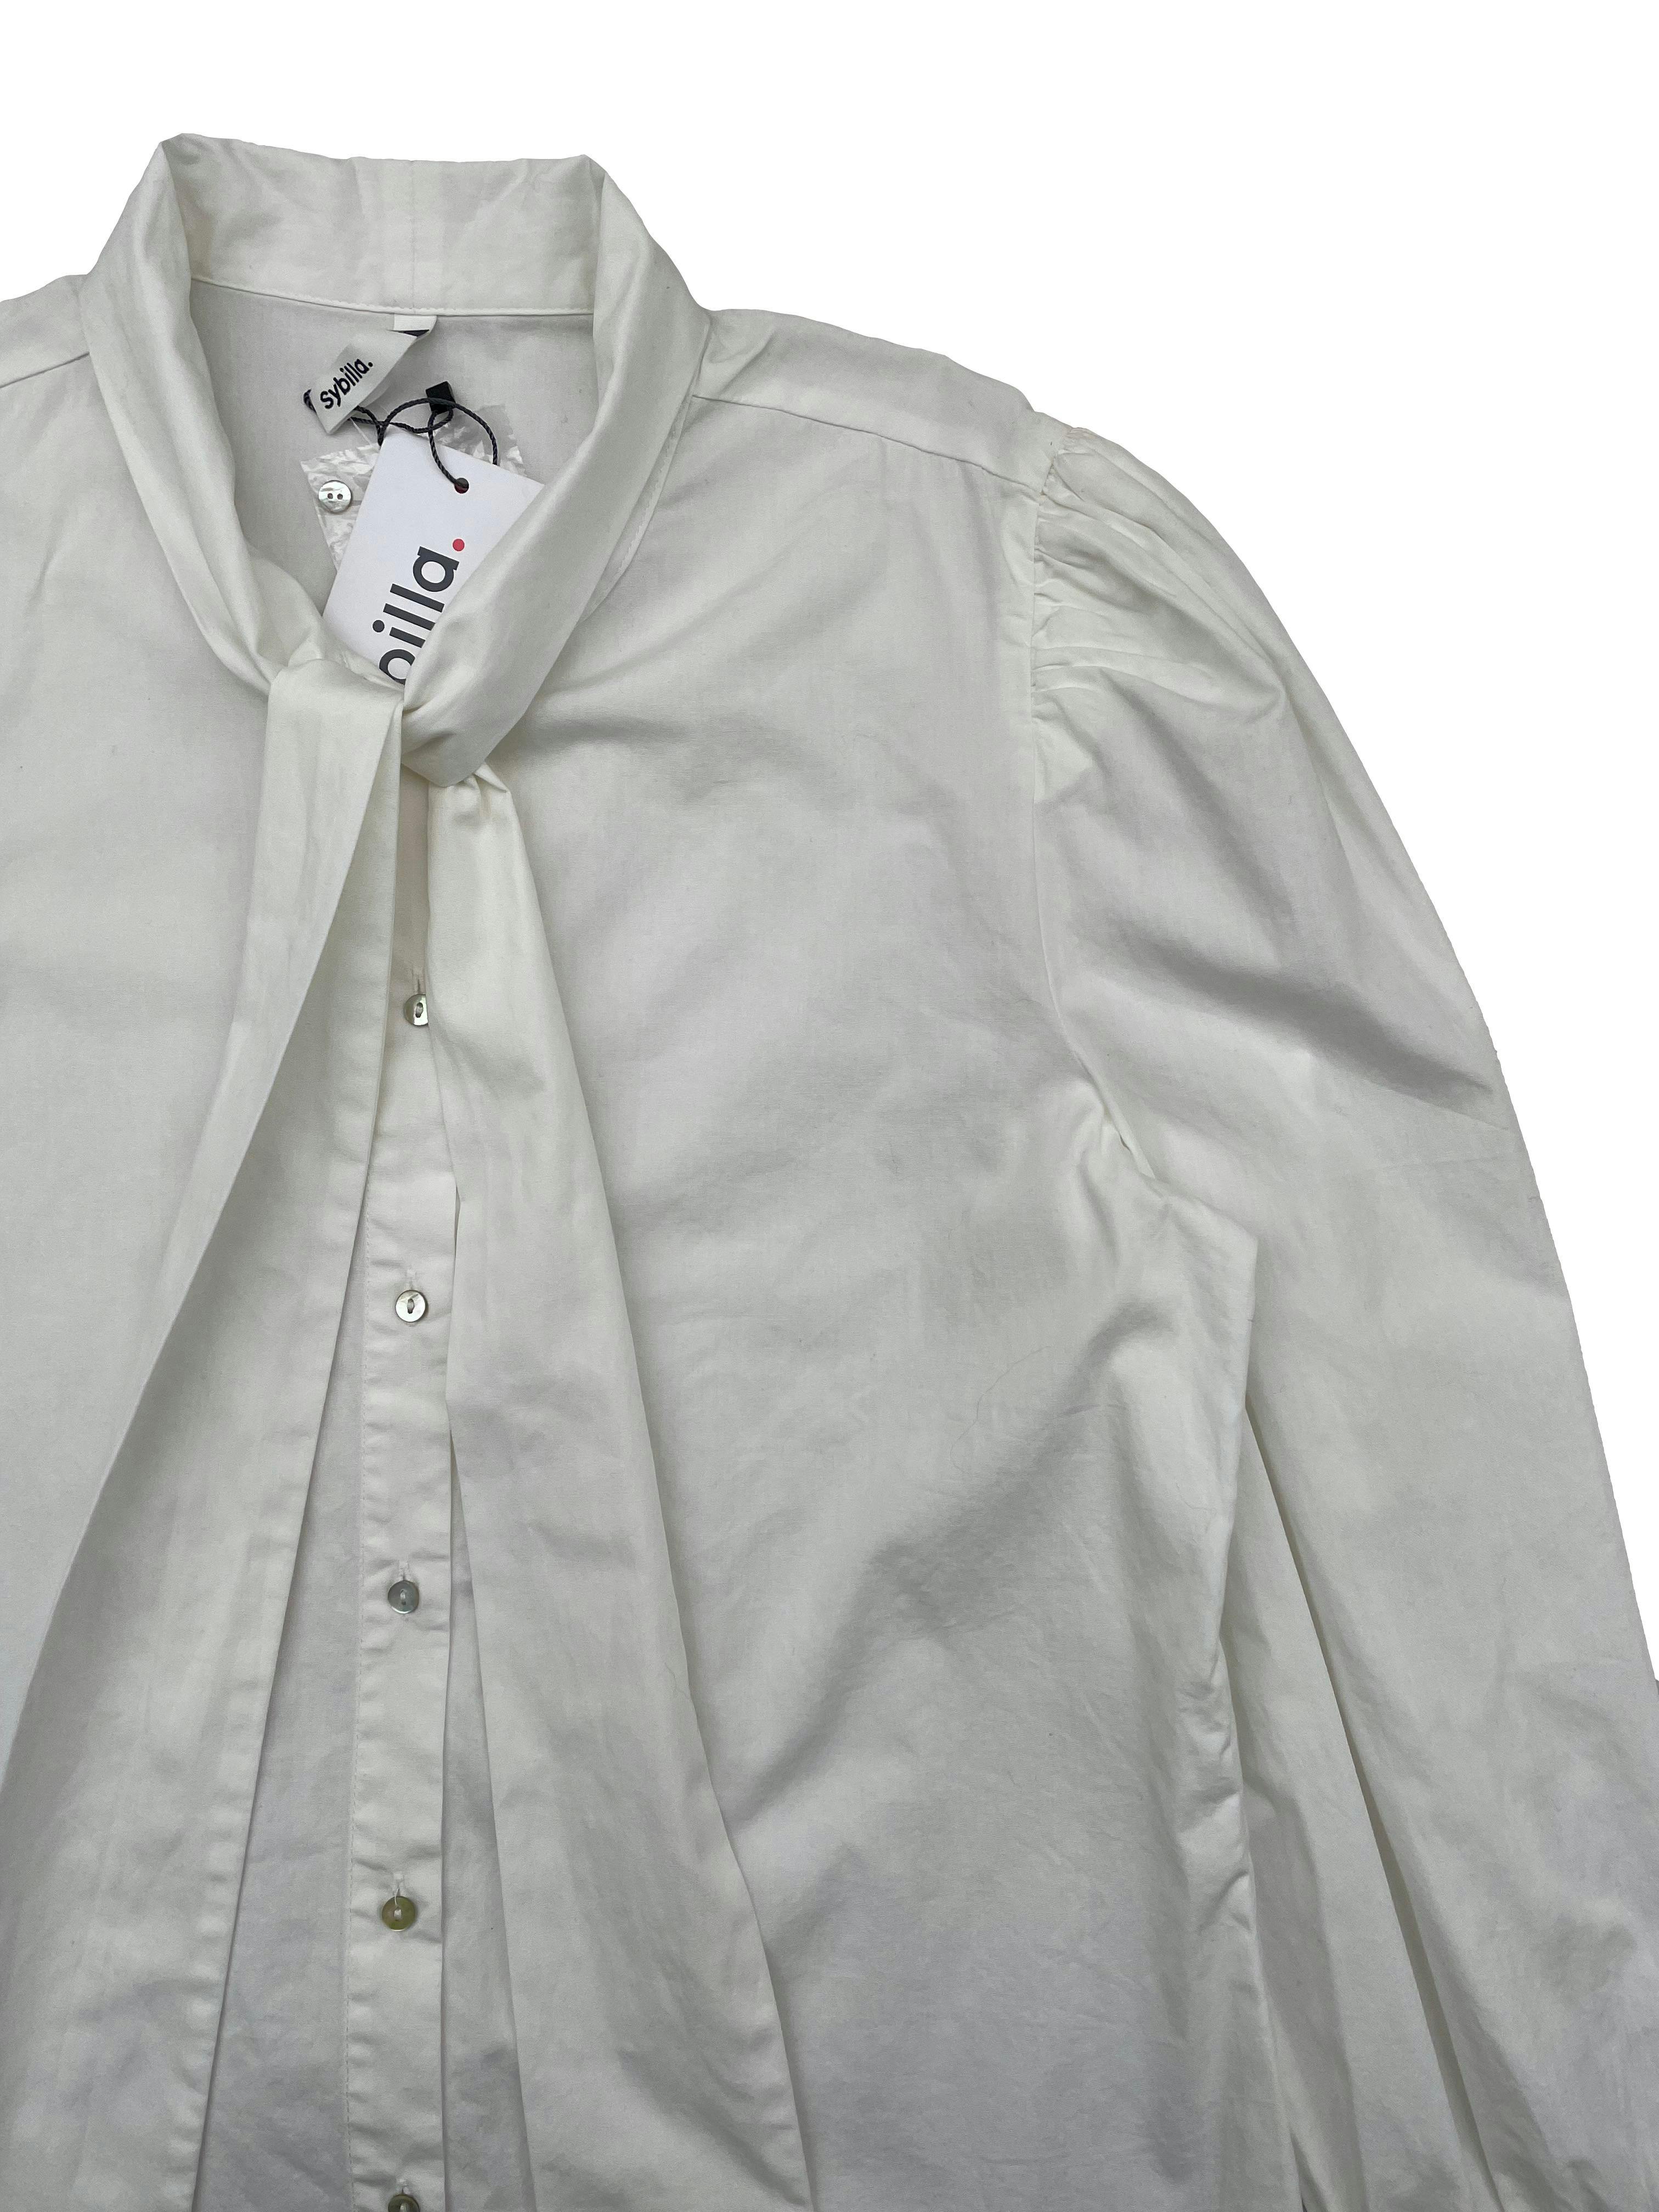 Blusa blanca Sybilla, corte recto, cintos en cuello, recogido en hombros y puños. Nueva con etiqueta. Busto 105cm, Largo 60cm.